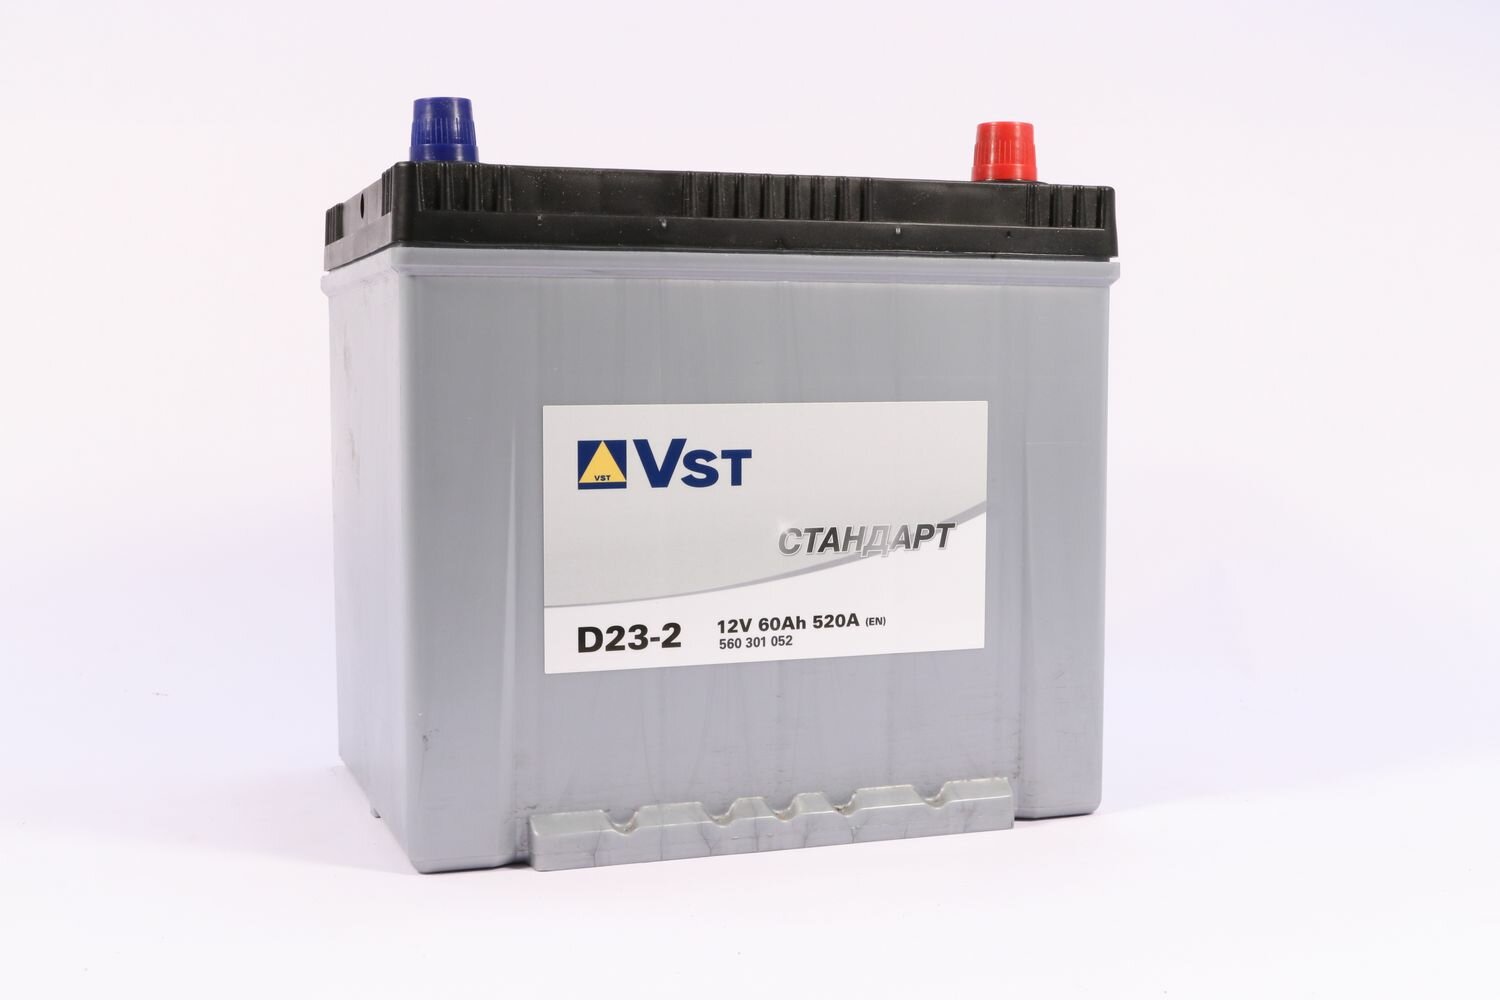 Автомобильный аккумулятор Vst Стандарт 6СТ-60.0 (560301052) D23-2 яп. ст/бортик